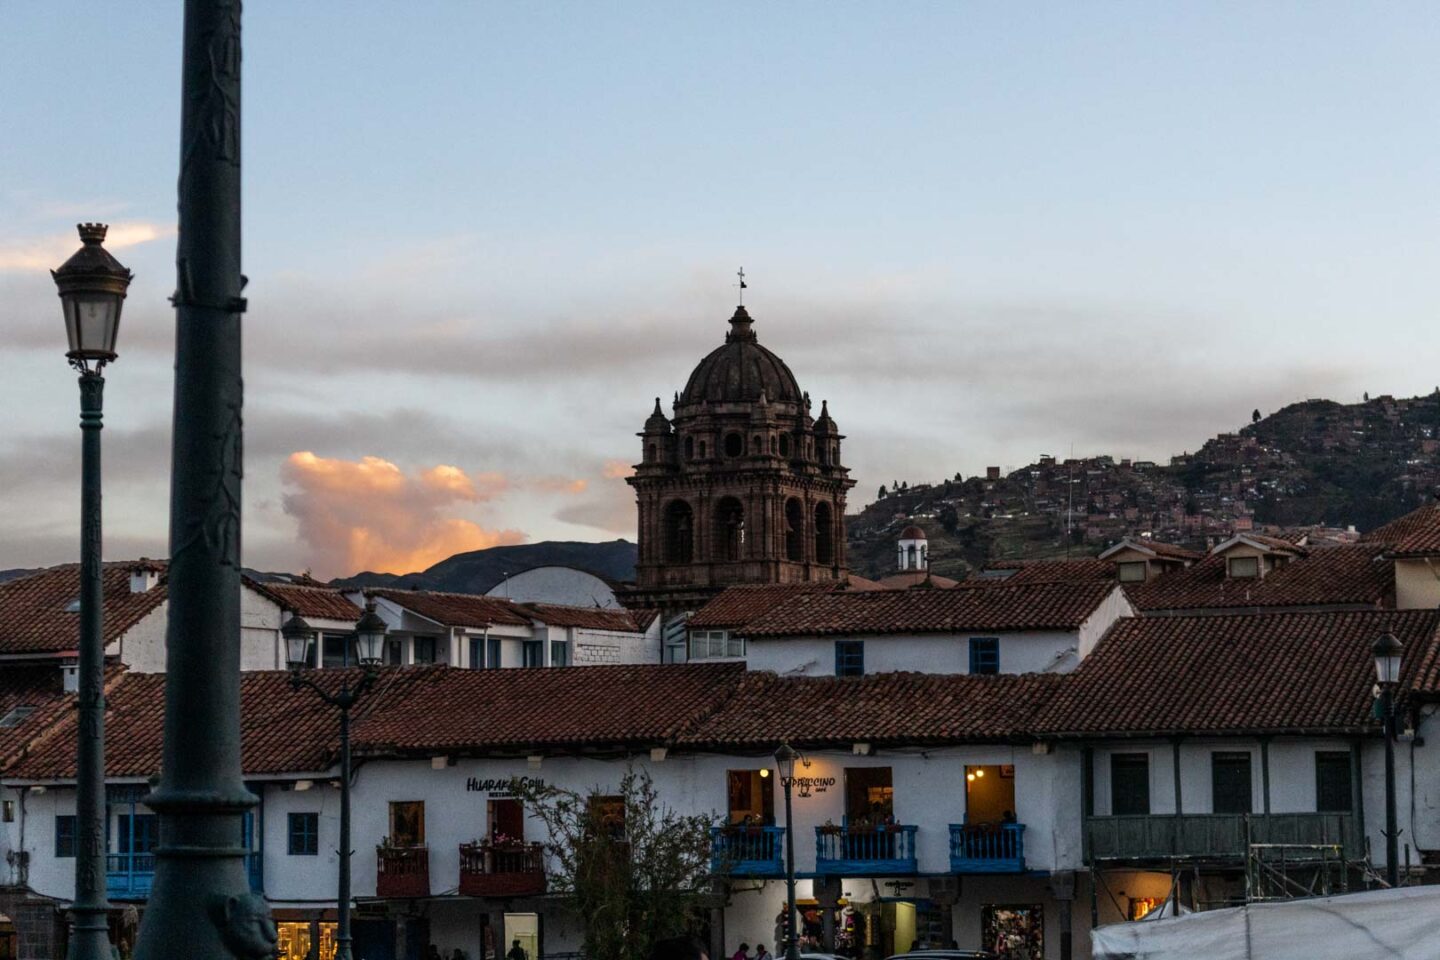 The architecture in Cusco, Peru